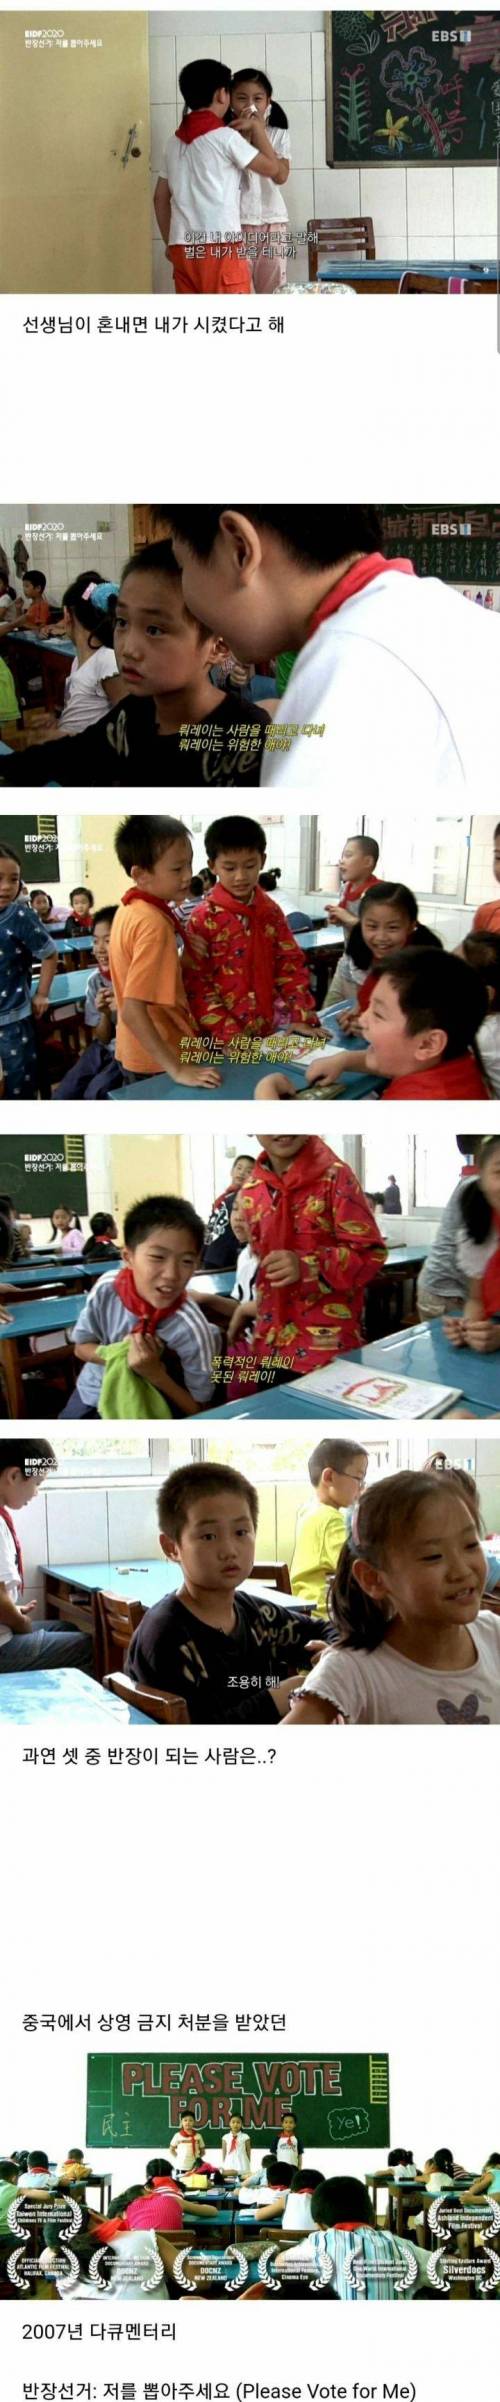 [스압] 중국 초등학교의 반장 선거.jpg